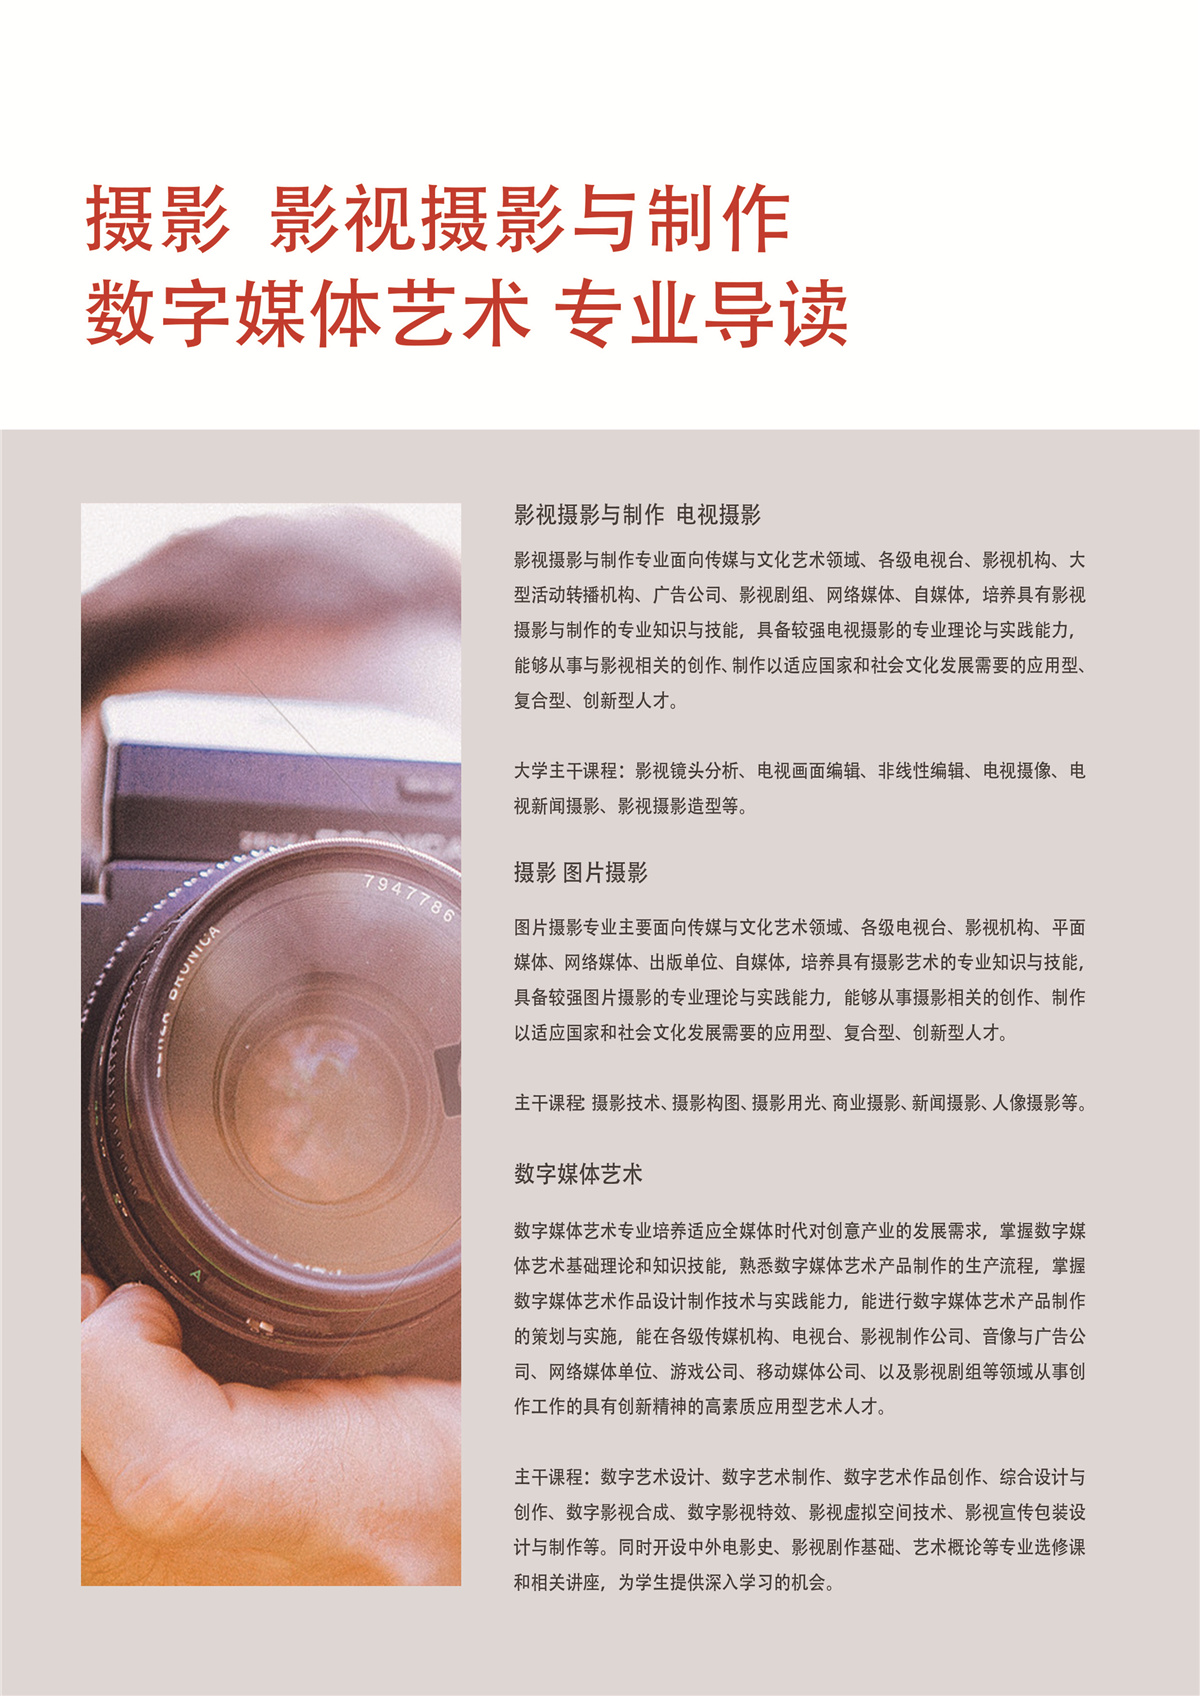 广东摄影艺考培训班多芬传媒艺考培训机构招生简章